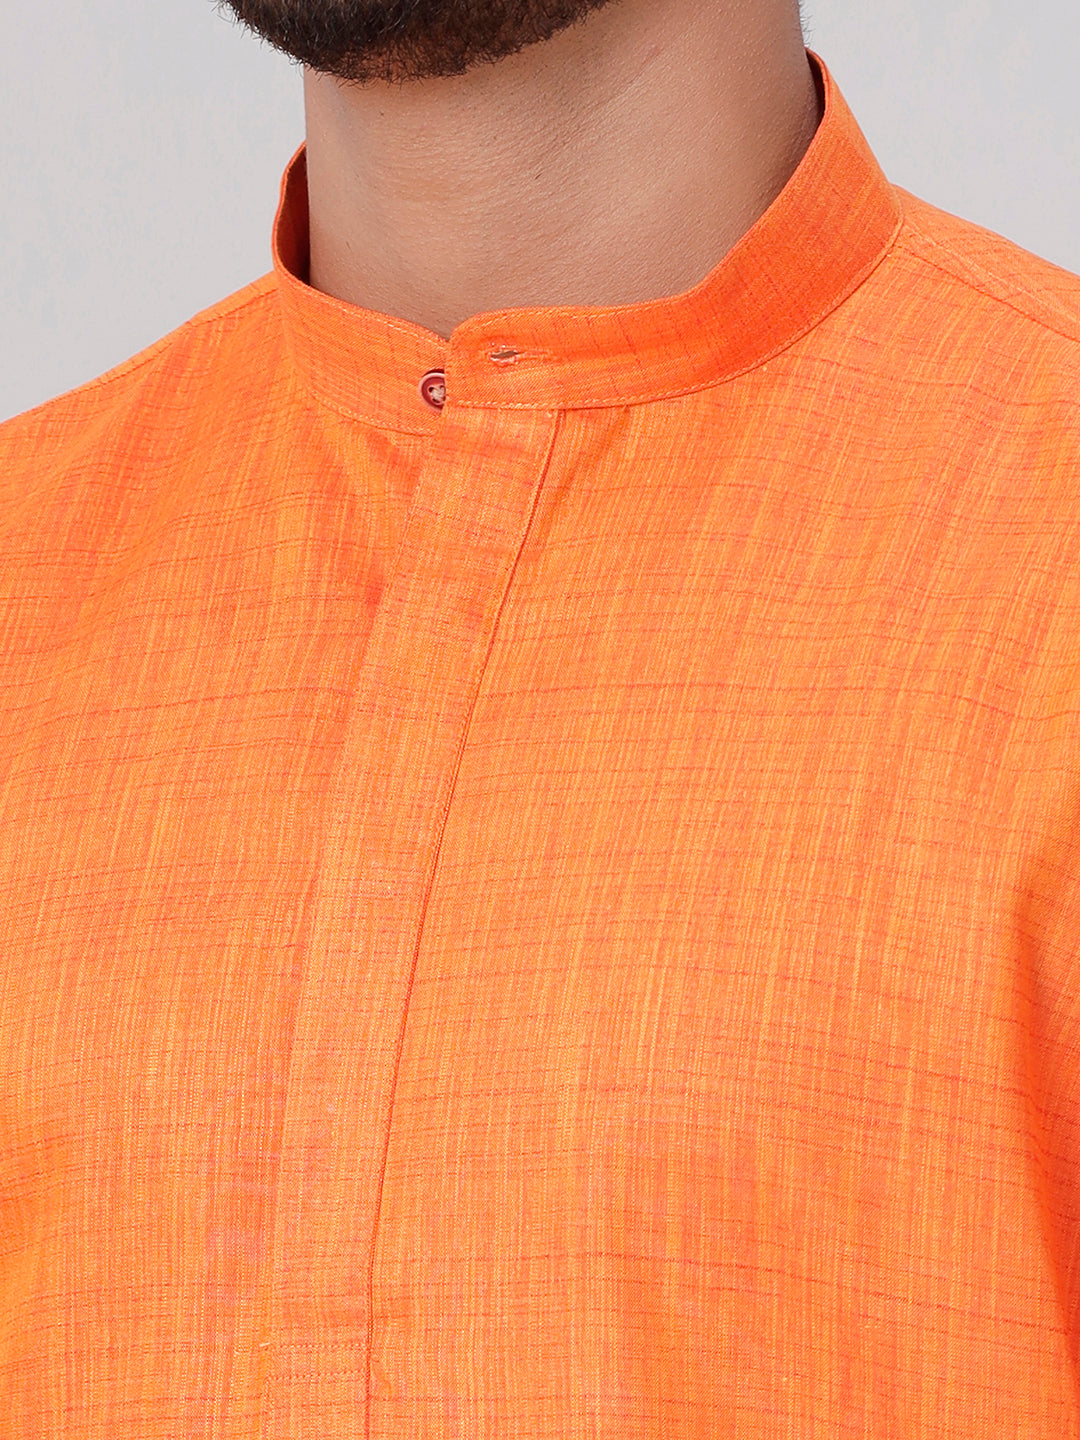 Mens Medium Length Orange Kurta with Cream Panchakacham Combo FS3-Zoom view